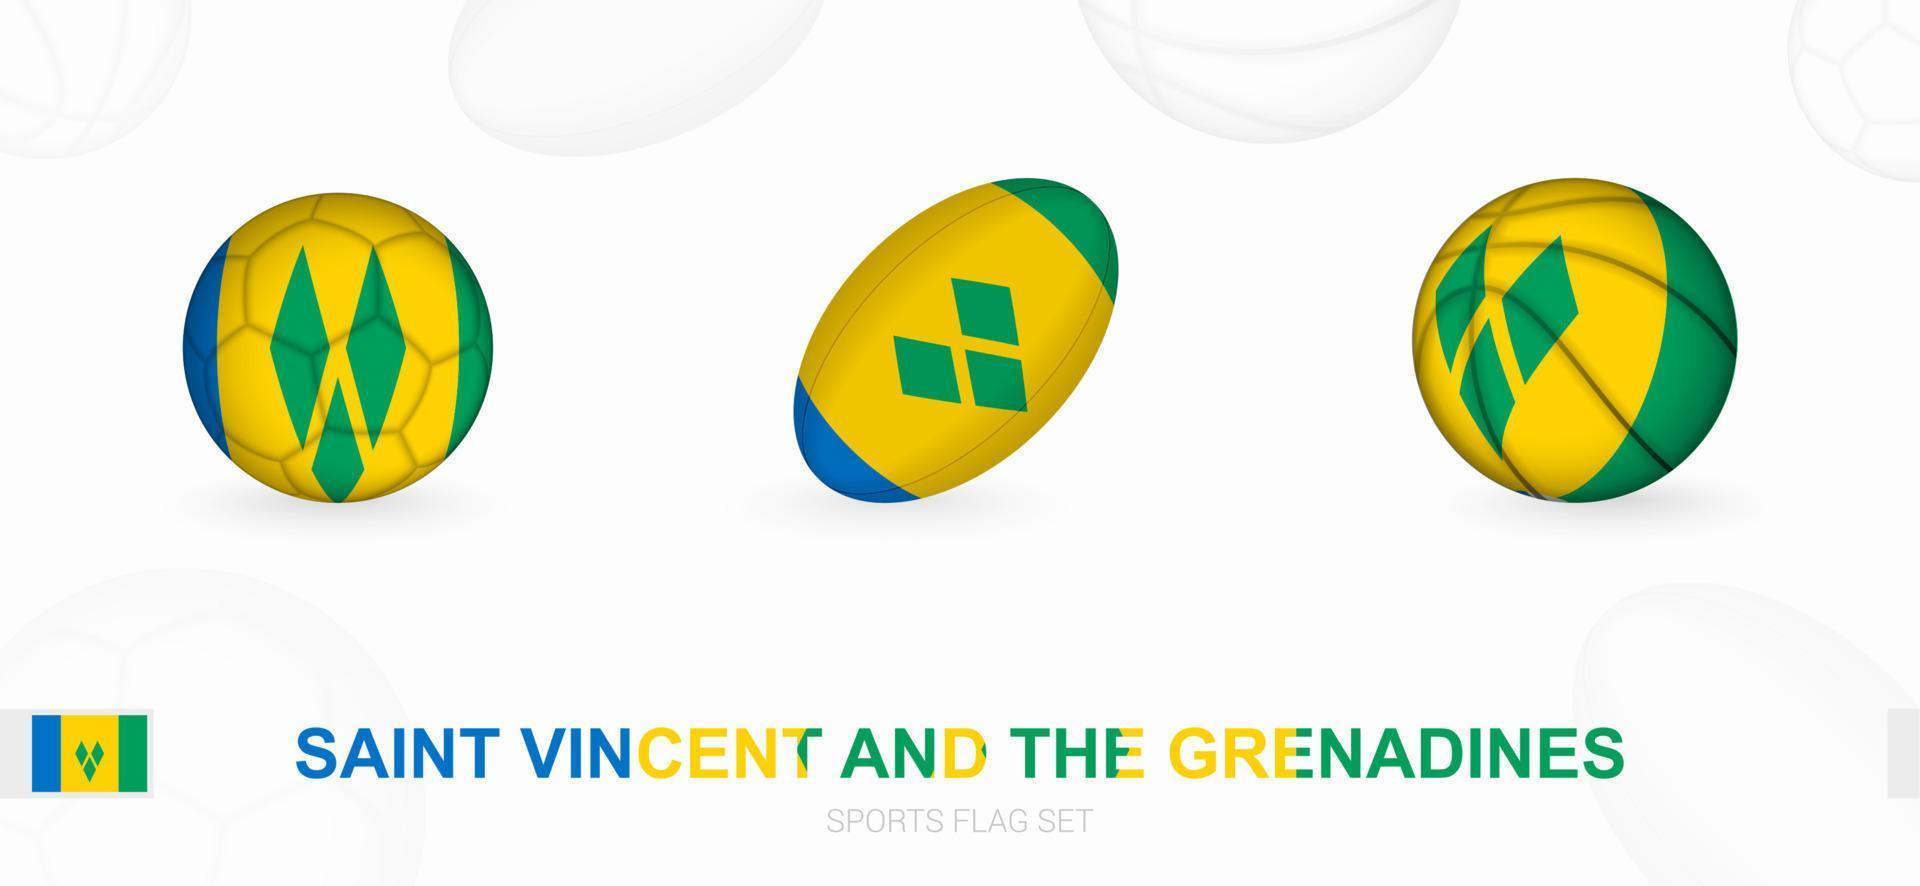 Deportes íconos para fútbol, rugby y baloncesto con el bandera de Santo Vincent y el granadinas vector